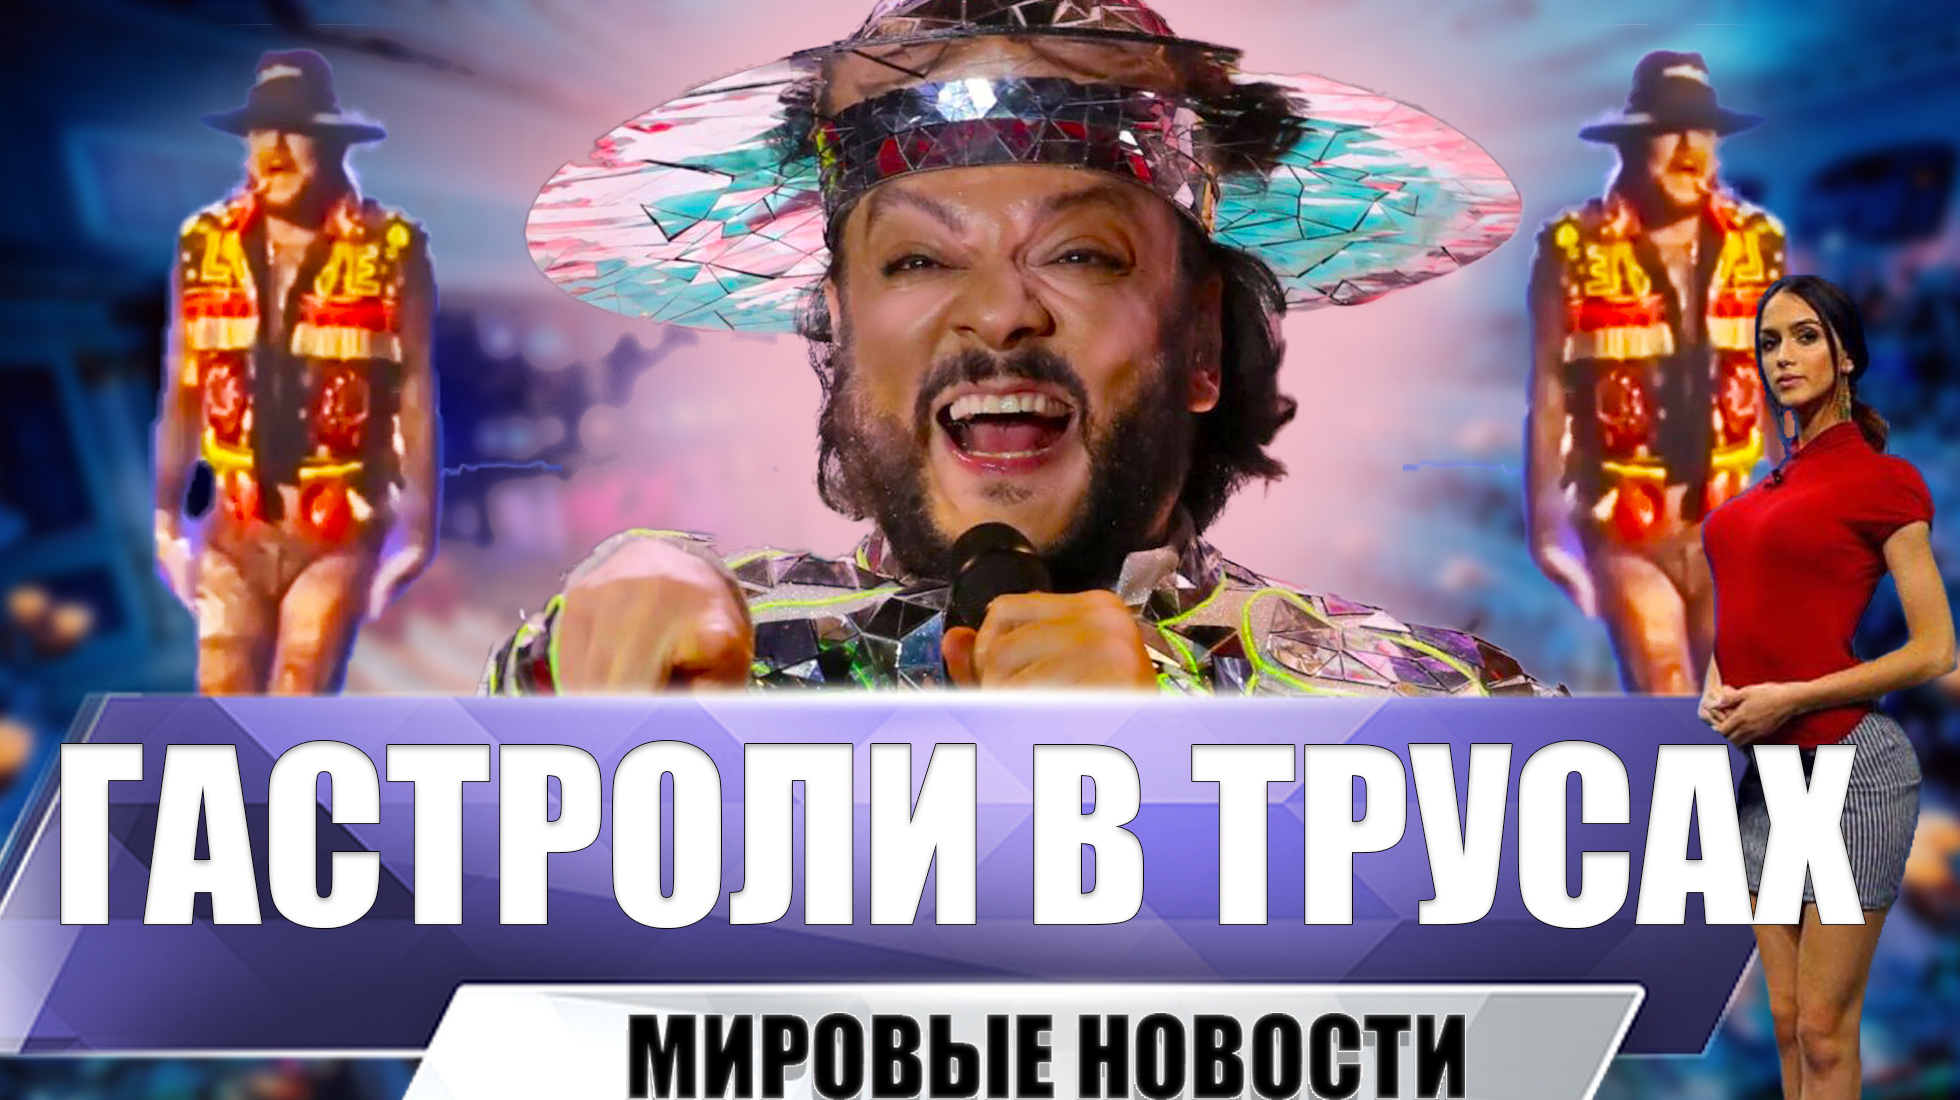 фото киркорова в лосинах на концерте в казахстане